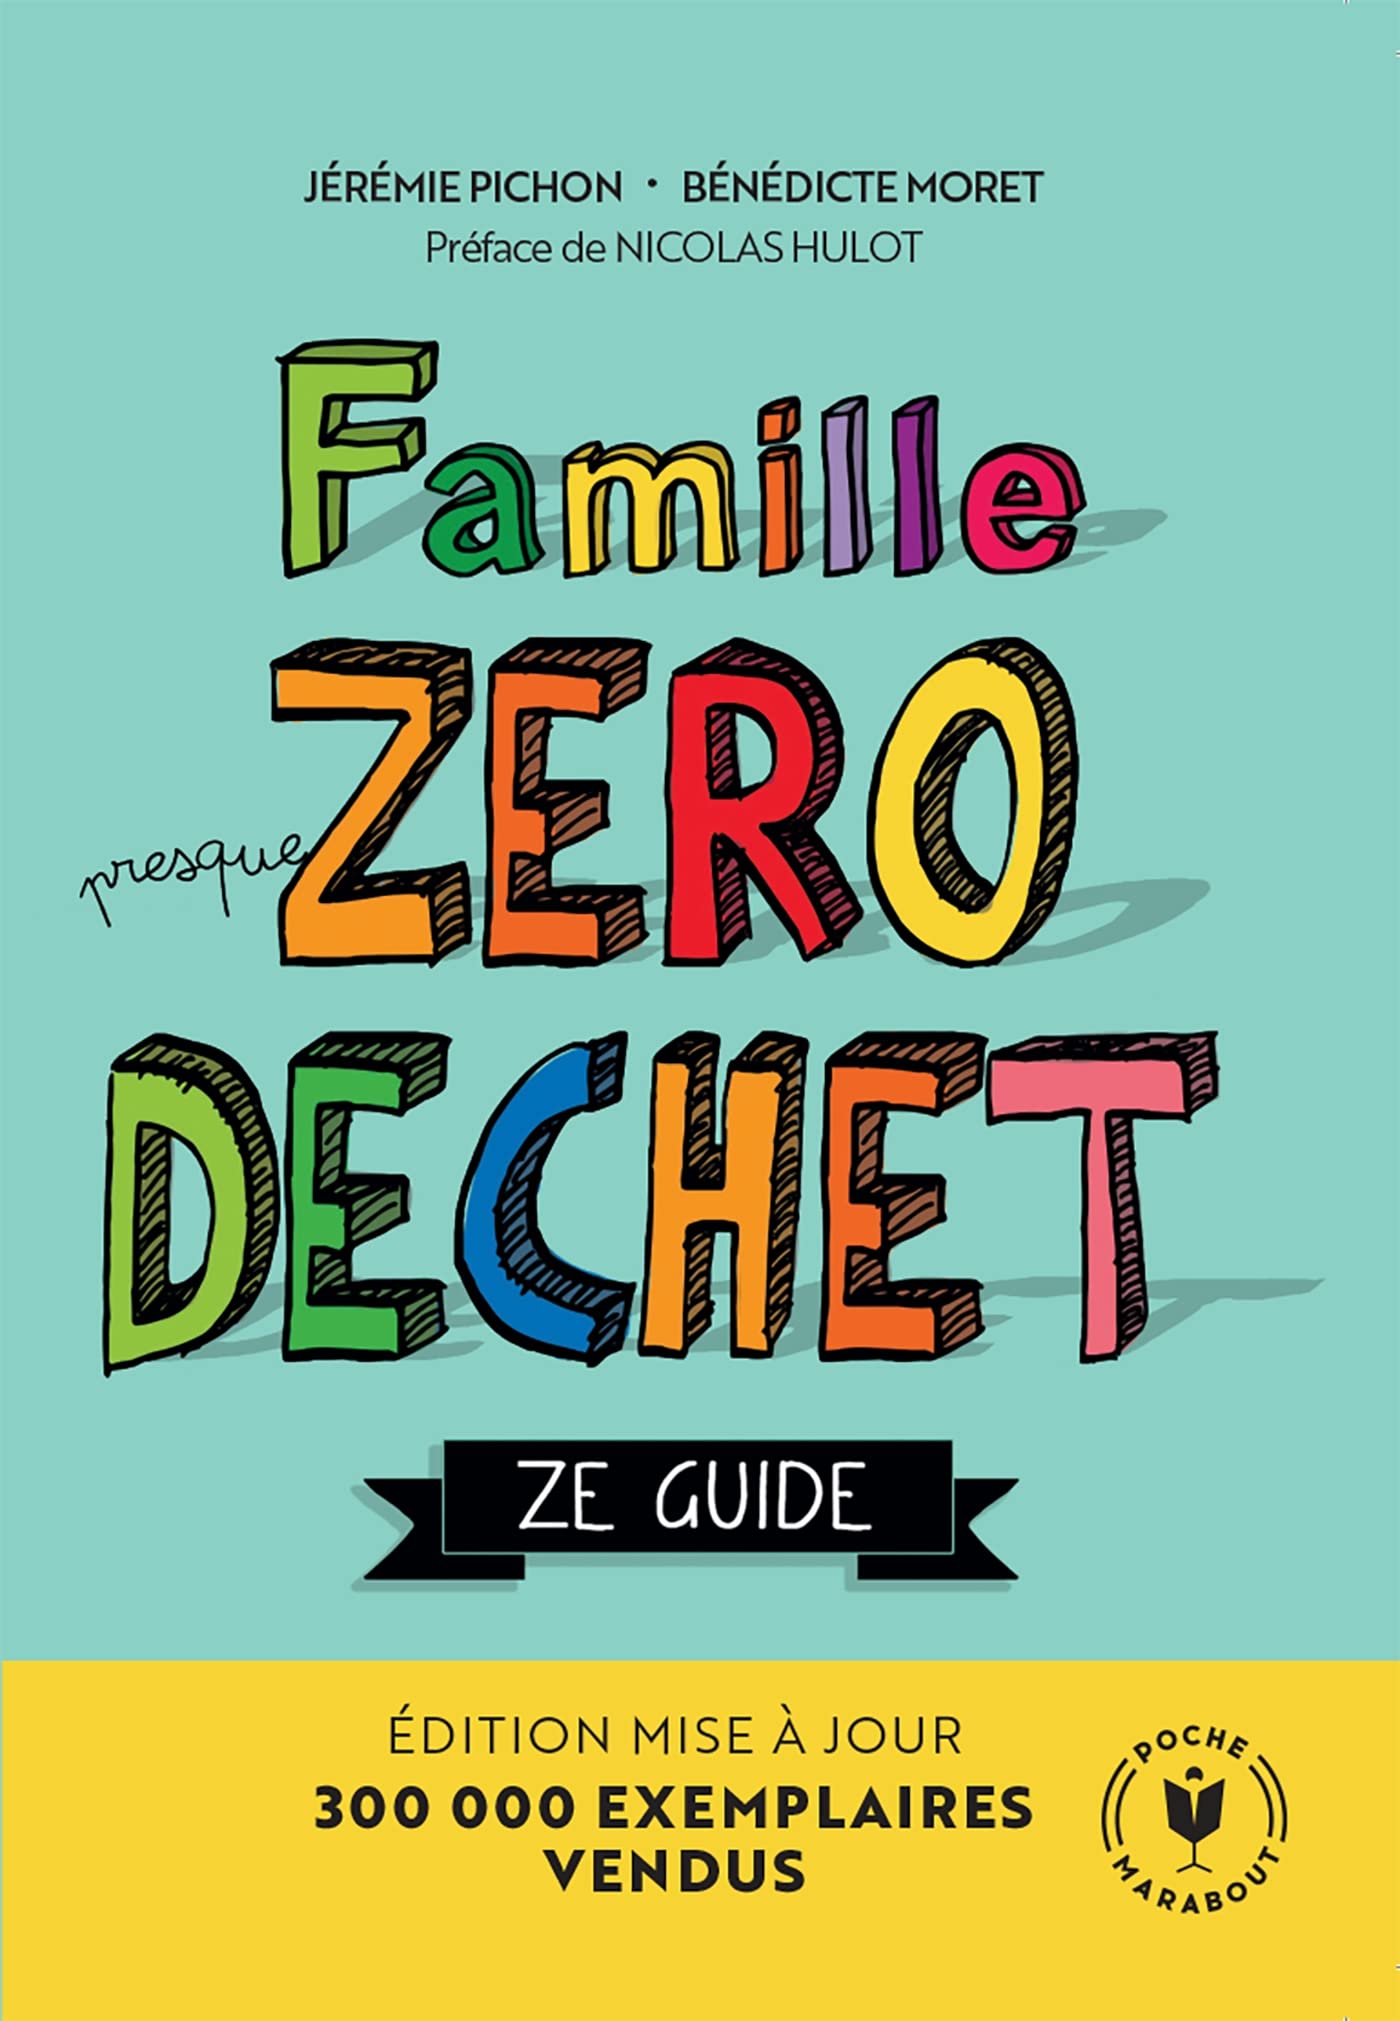 Famille Zéro Déchet - Ze Guide: Edition mise à jour